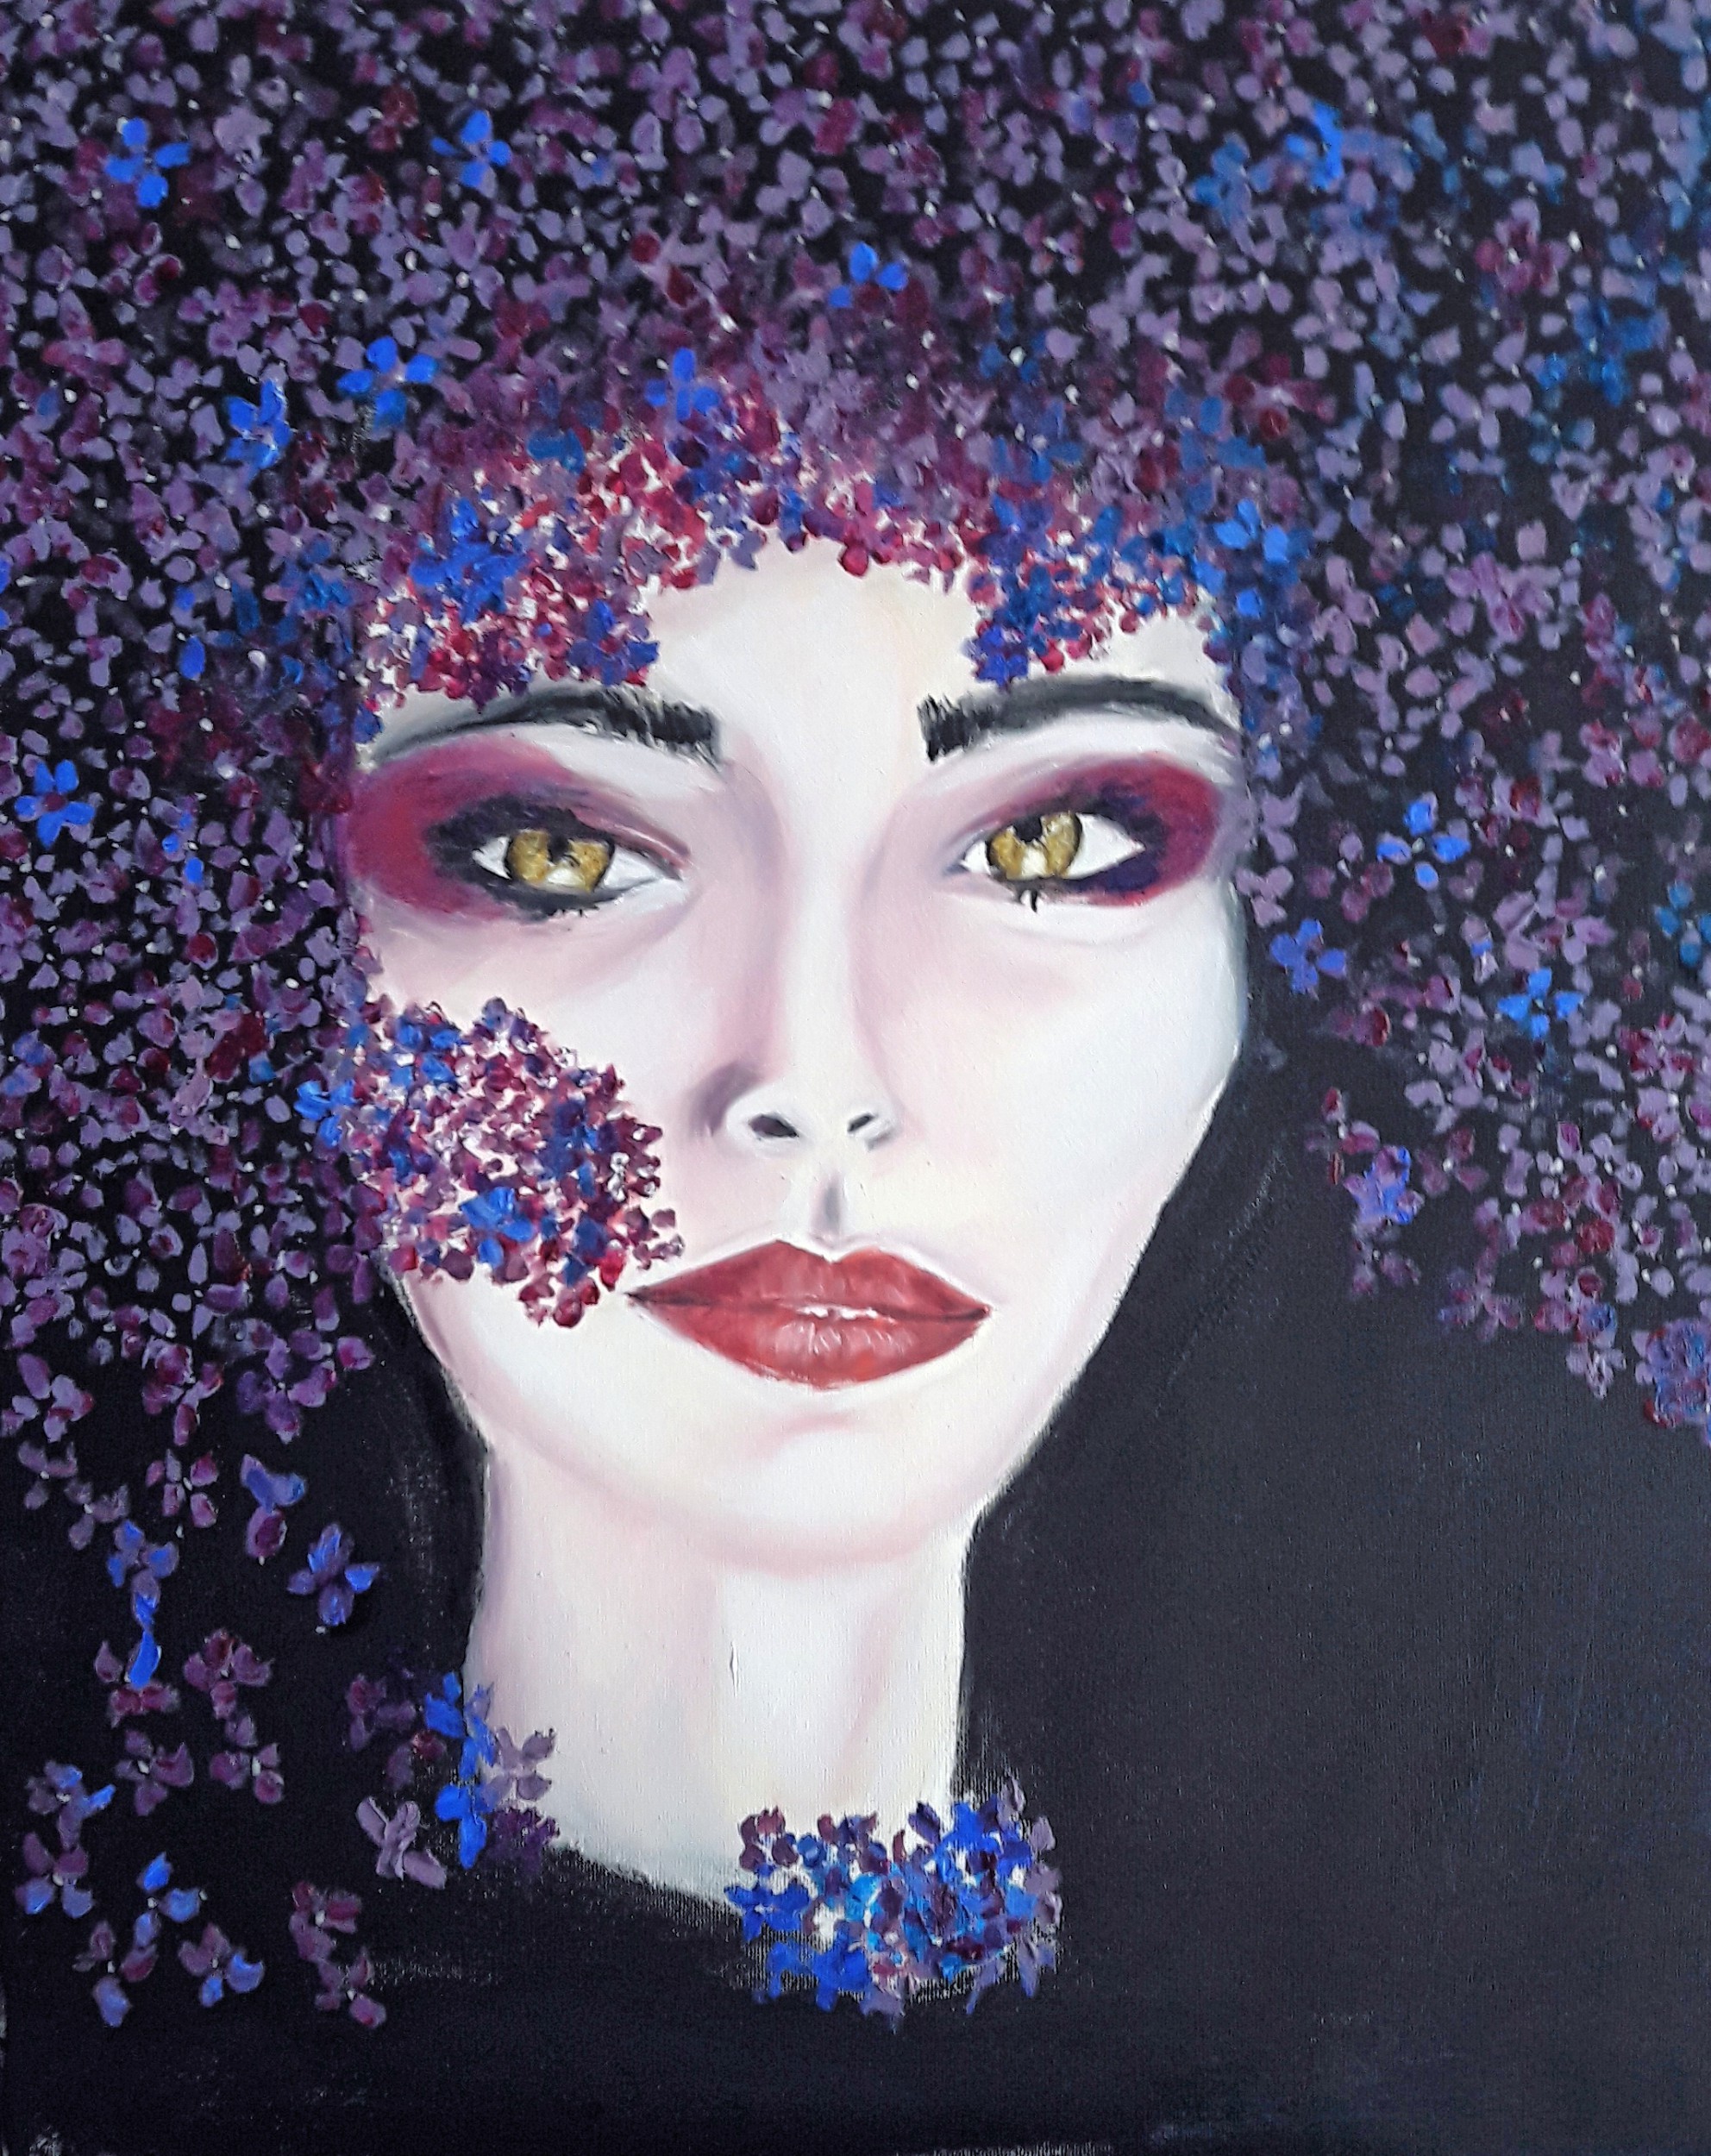 Ritratto di donna con fiori - Pierx - Opera Celeste Network